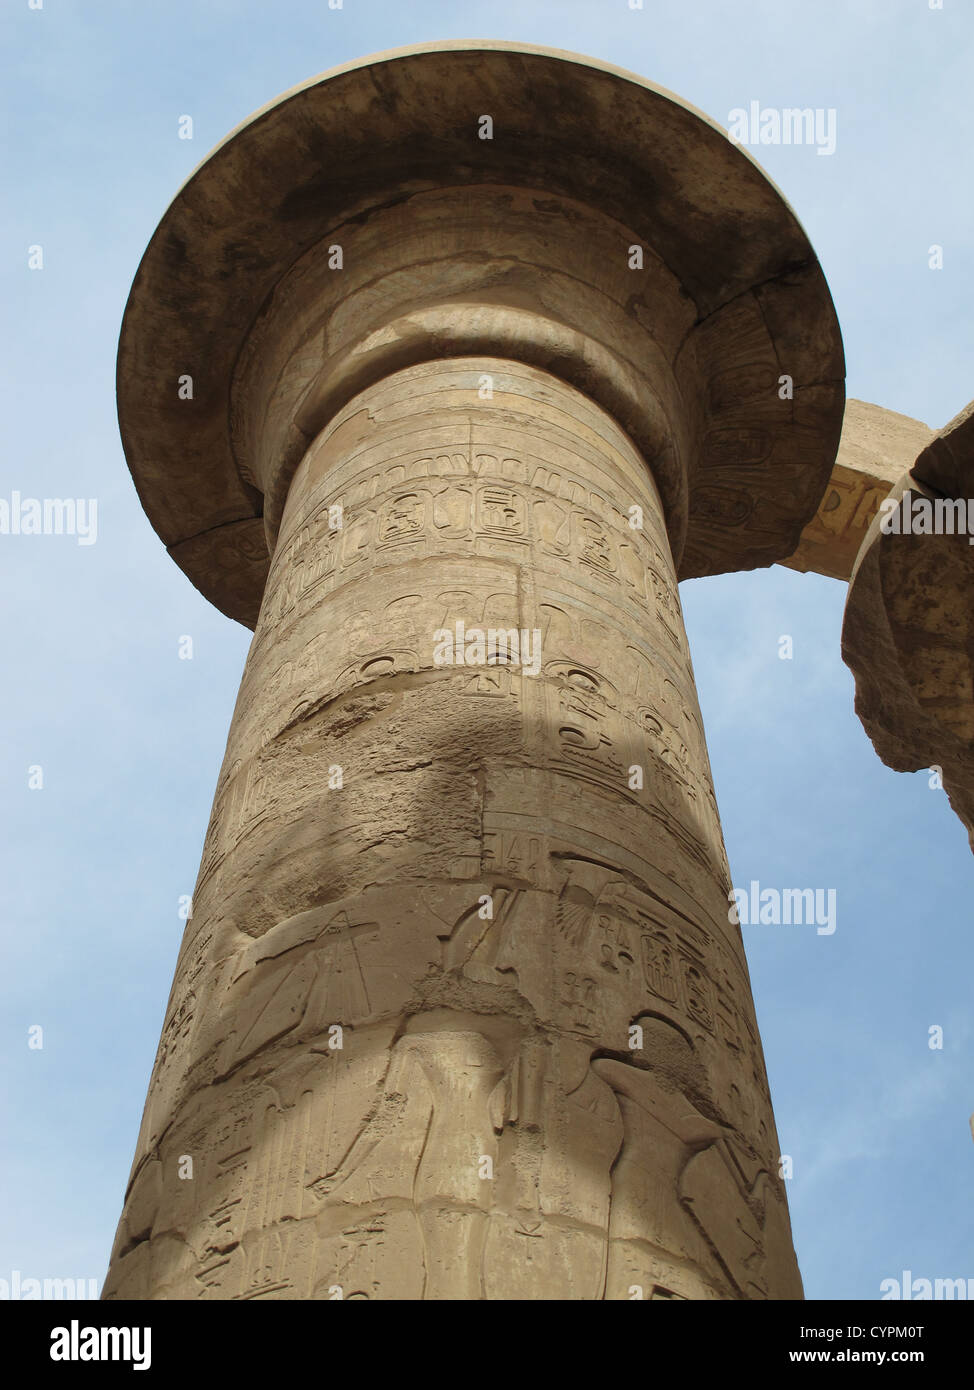 Le colonne e i geroglifici del tempio di Karnak in Egitto, archeologia, Ramses Foto Stock